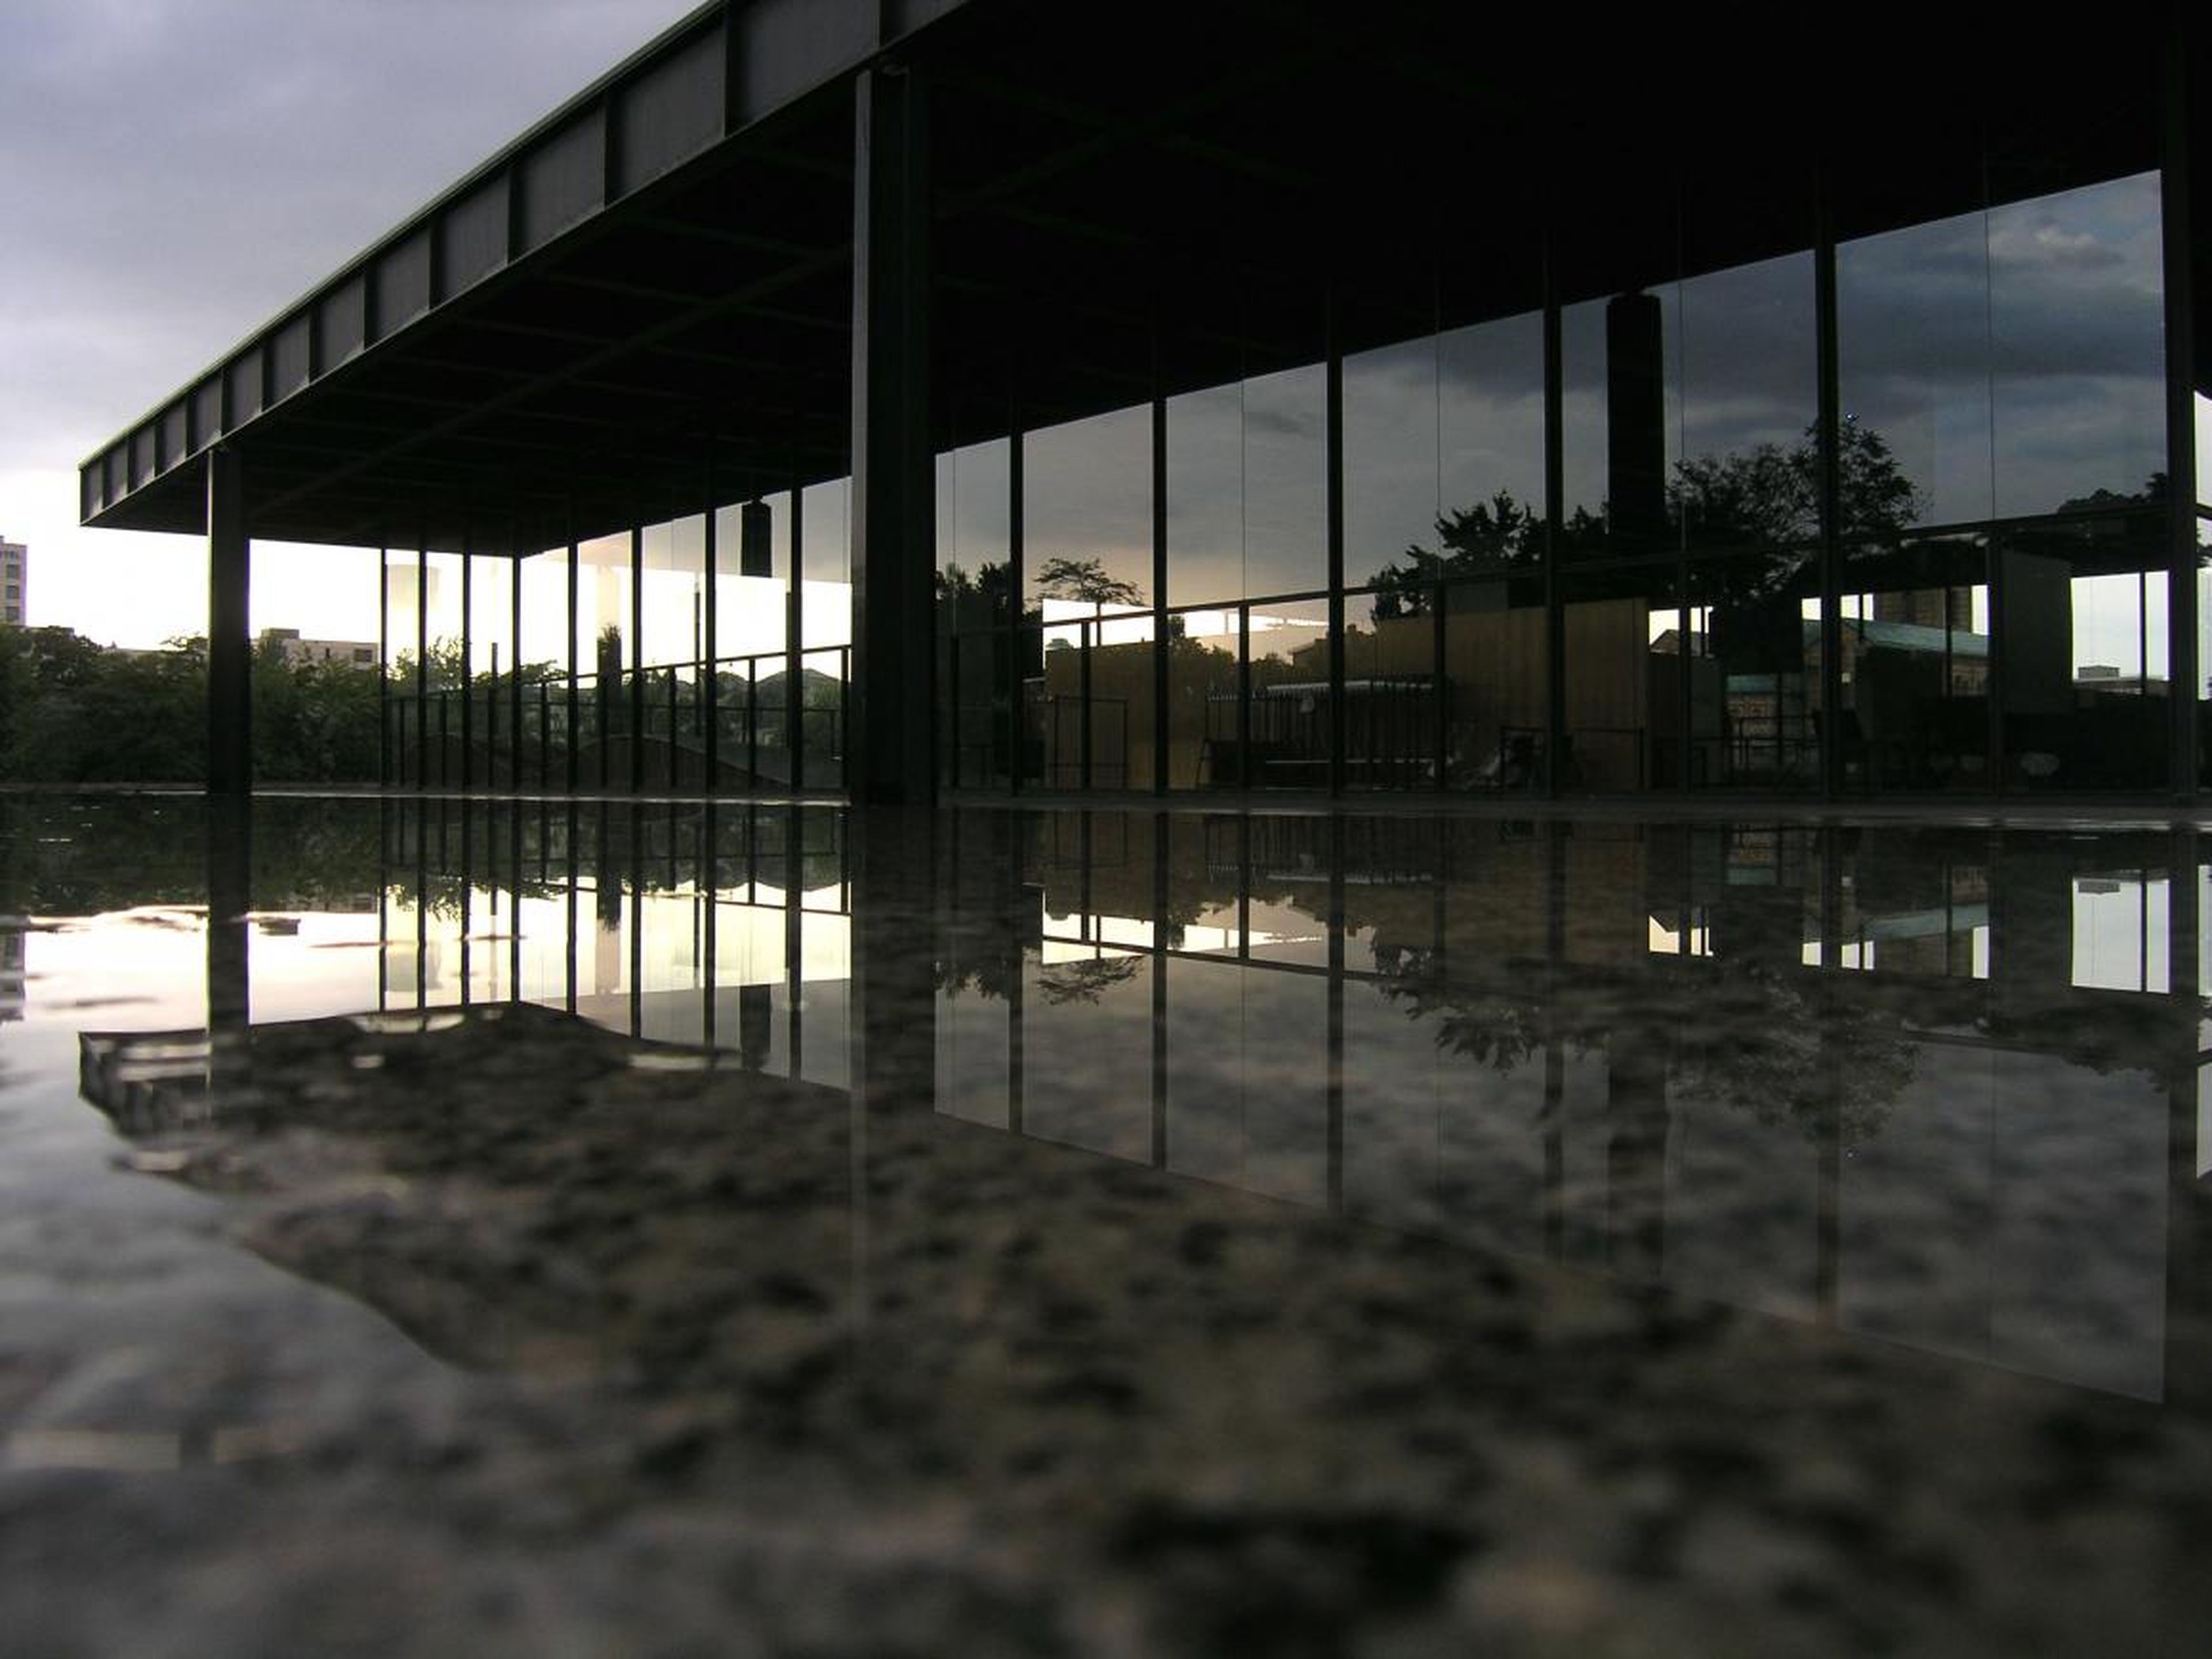 El maestro modernista Mies van der Rohe utilizó líneas minimalistas y espacios abiertos para crear edificios que parecen flotar en el aire como la Neue Nationalgalerie de Berlín, construida en los años sesenta.